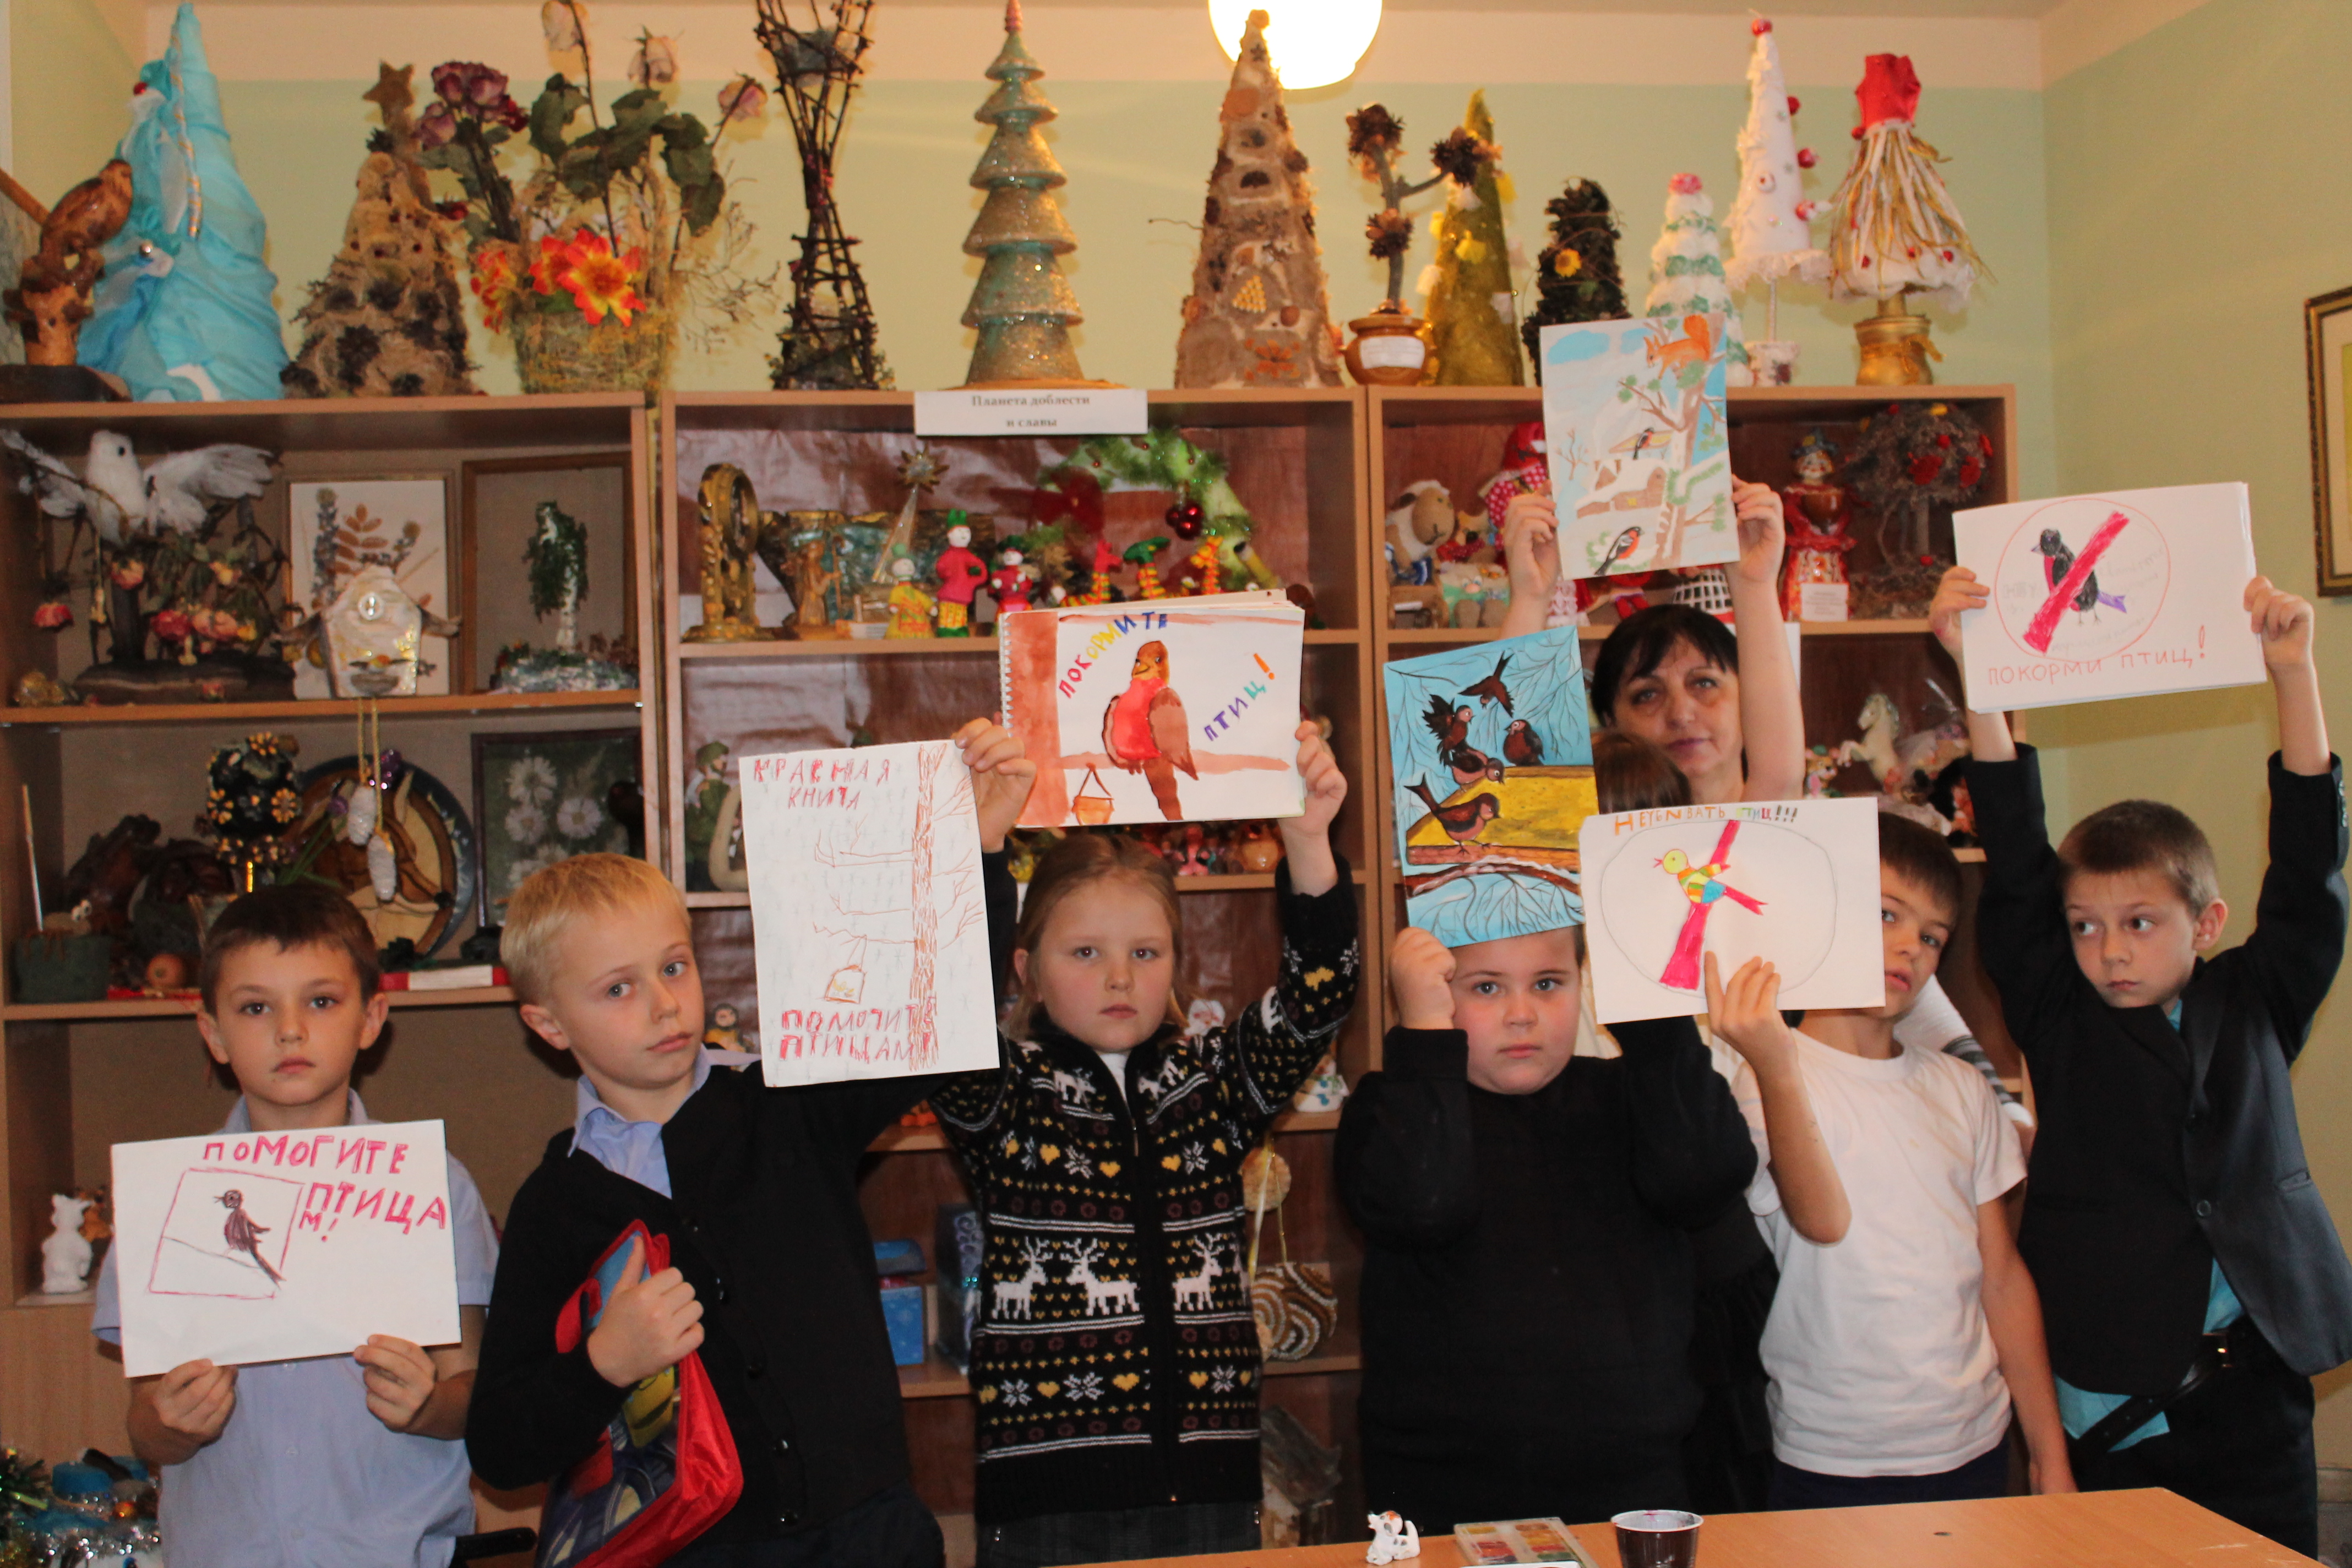 Учащиеся объединения "Юные умельцы" станции юннатов изготовили листовки с призывами помочь птицам зимой